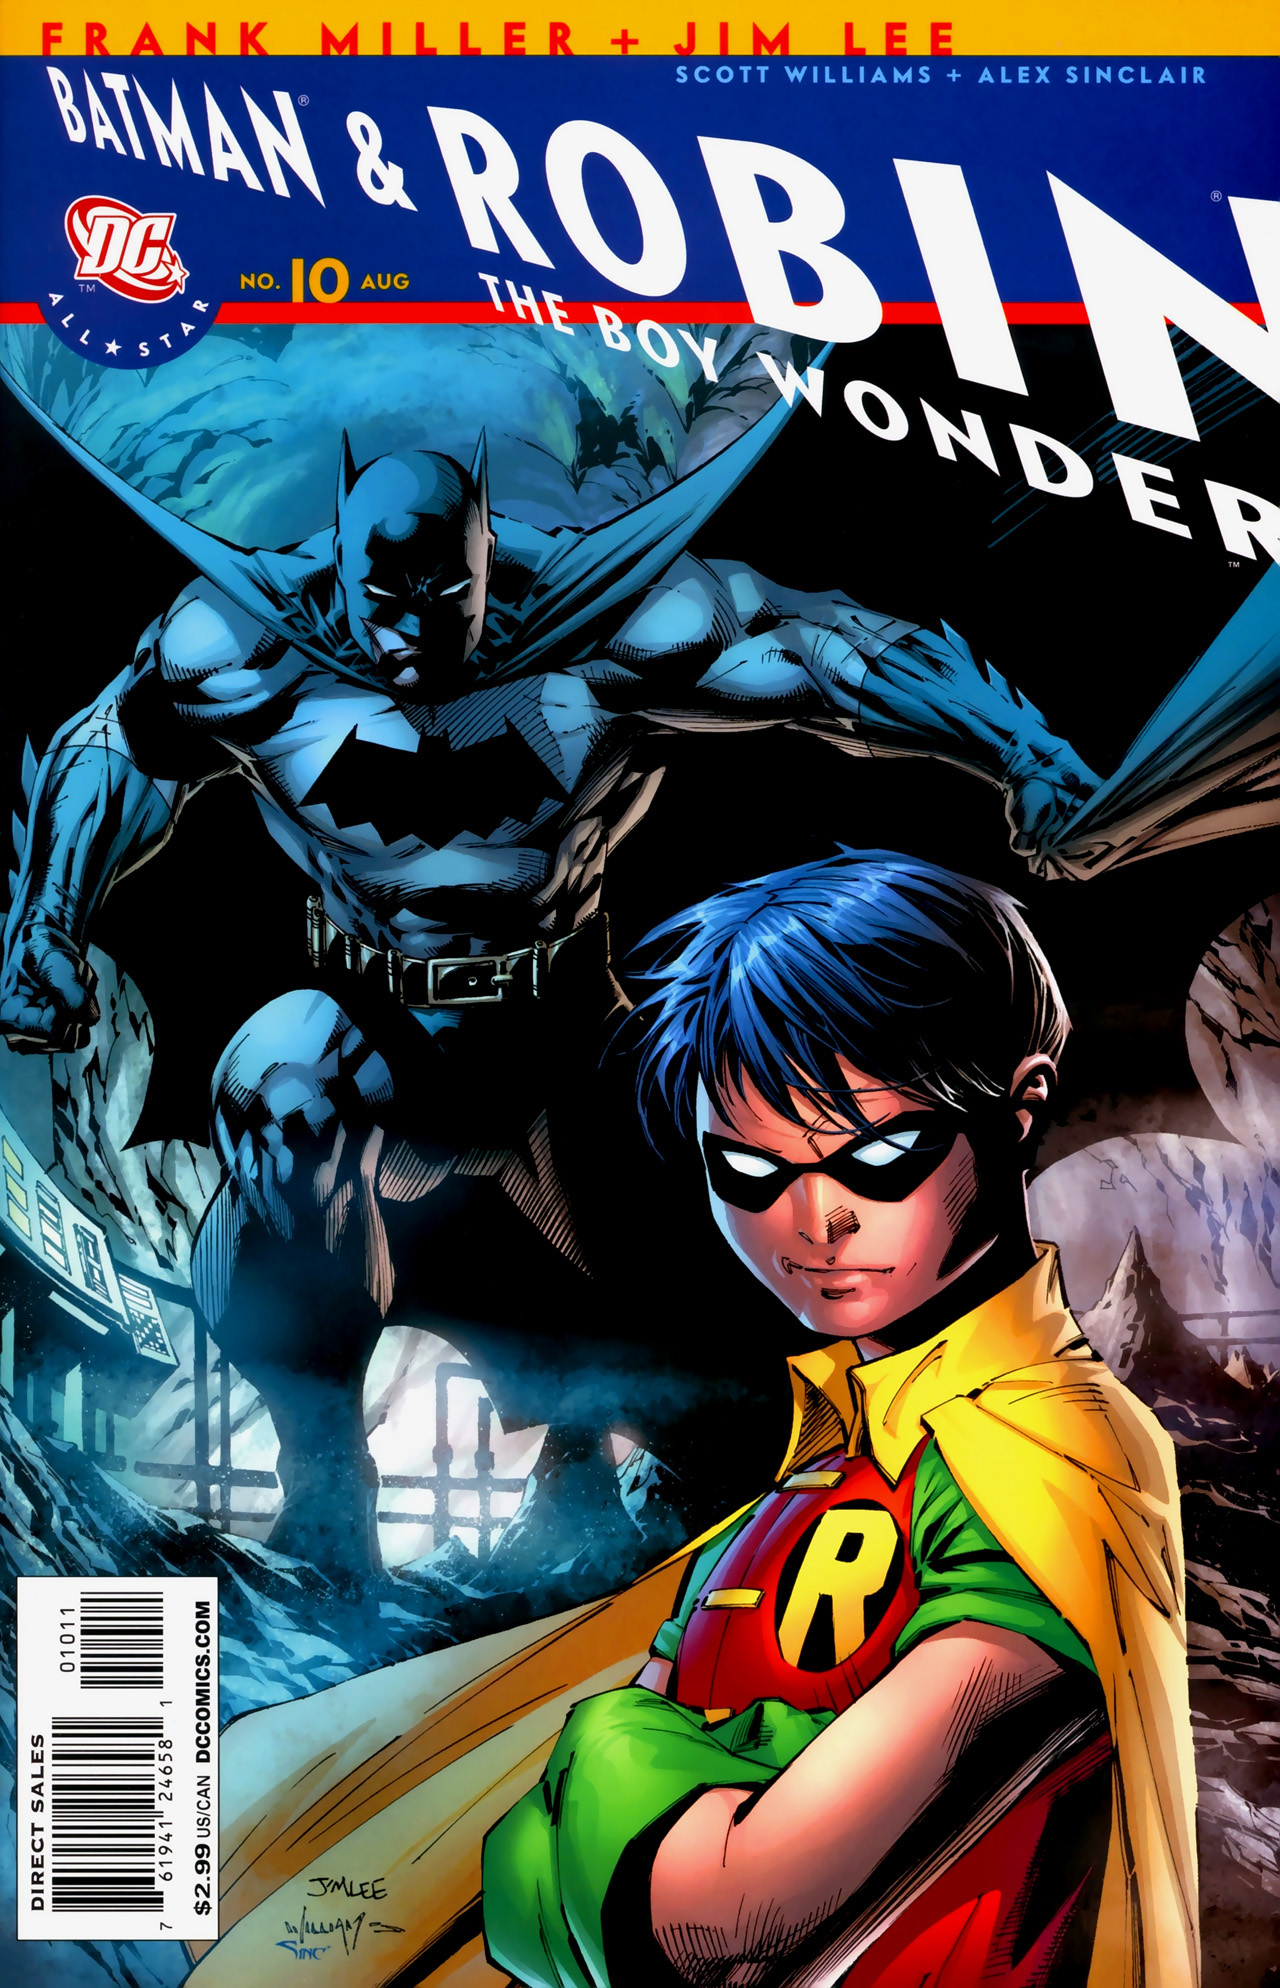 All Star Batman and Robin, the Boy Wonder Vol 1 10 | DC Database | Fandom